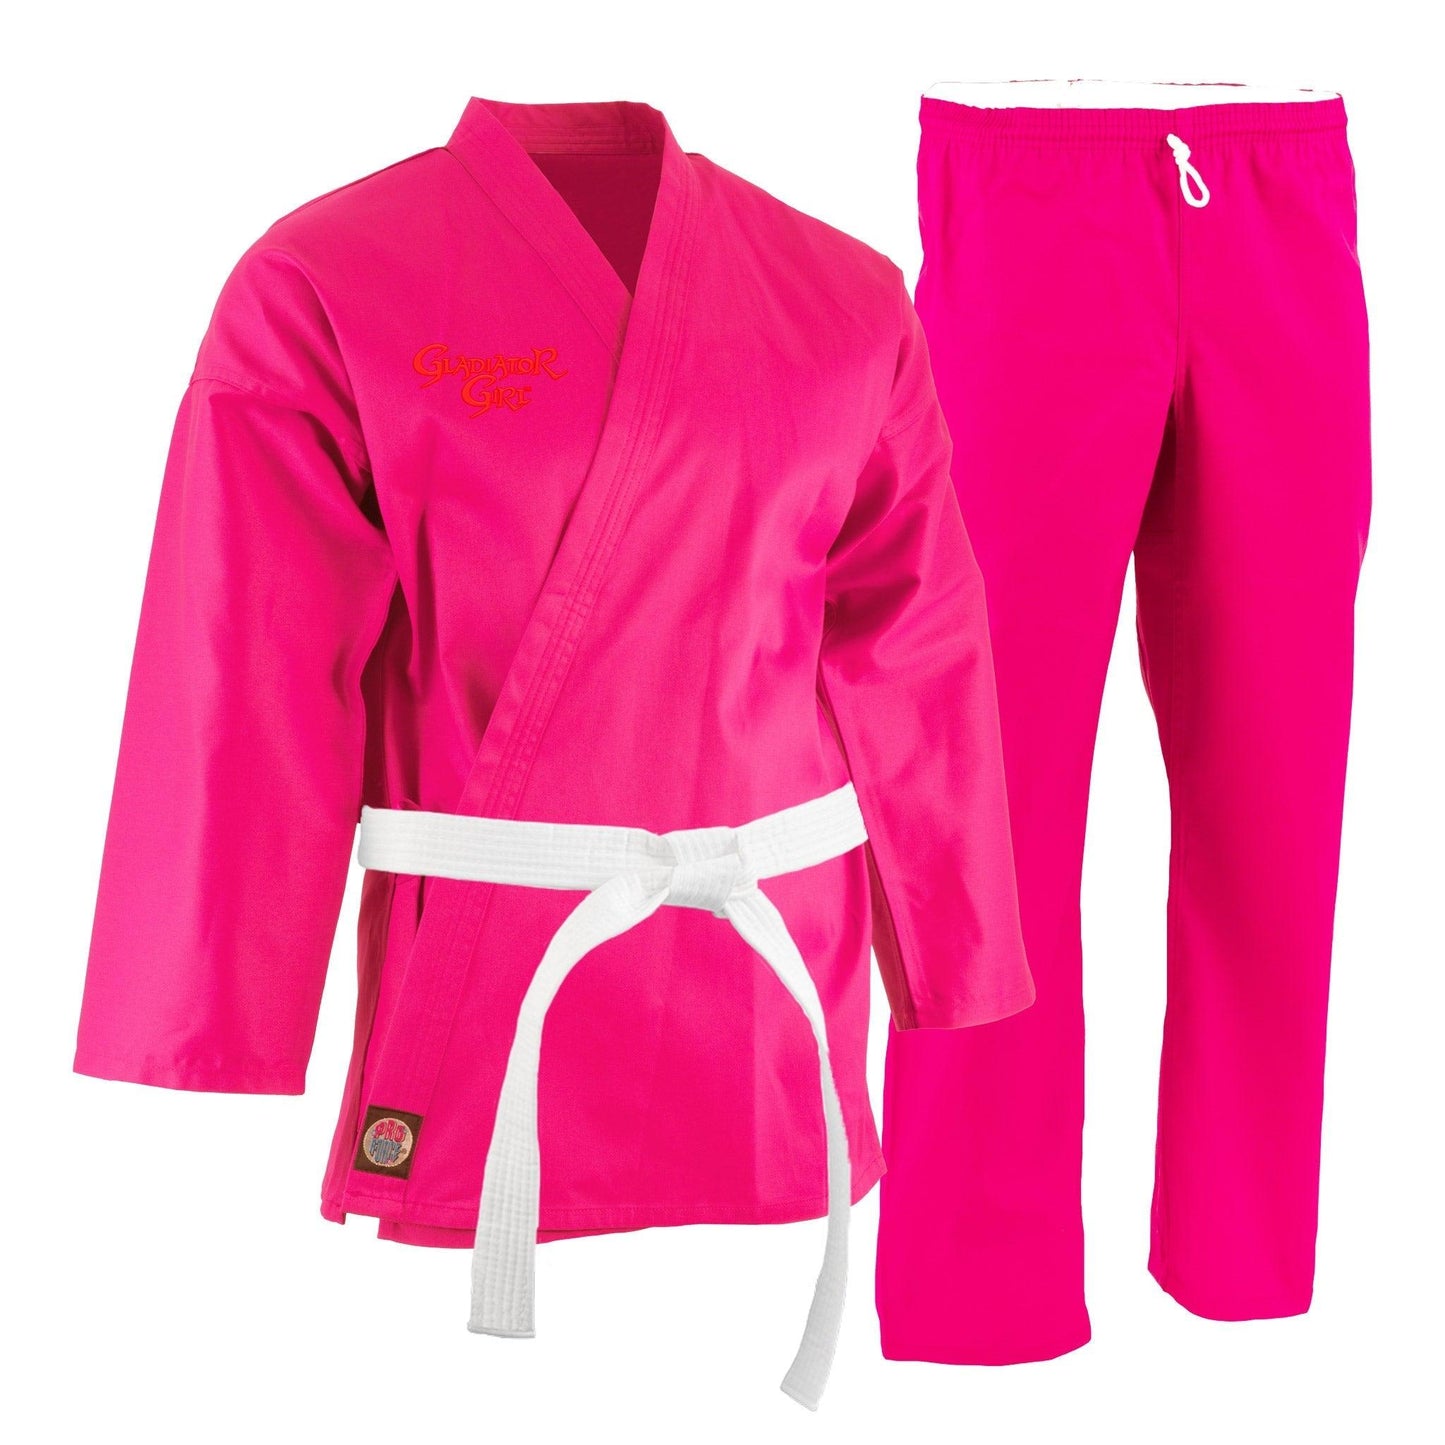 ProForce Gladiator Girl Pink 6 oz. Karate Uniform with Free White Belt - 55/45 Blend - Violent Art Shop